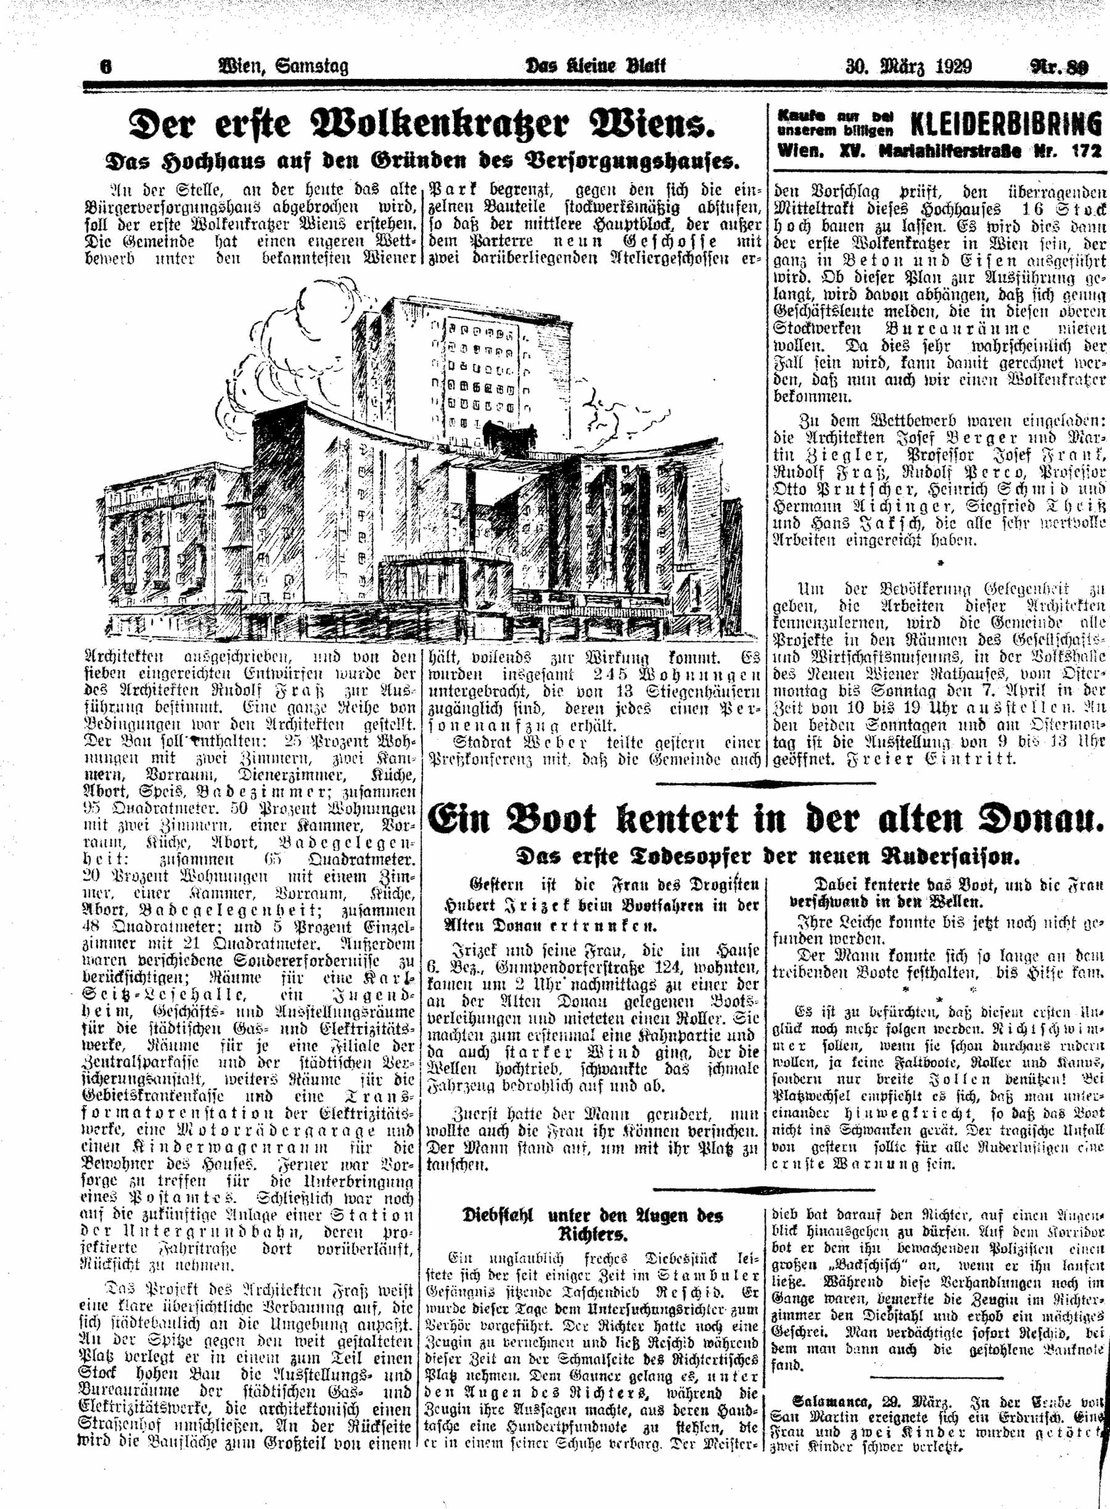 Bericht über das geplante Hochhaus an der Ecke Währingerstraße / Nußdorferstraße. Das Kleine Blatt, 30.3.1929, S. 6, Quelle: Anno/ÖNB 